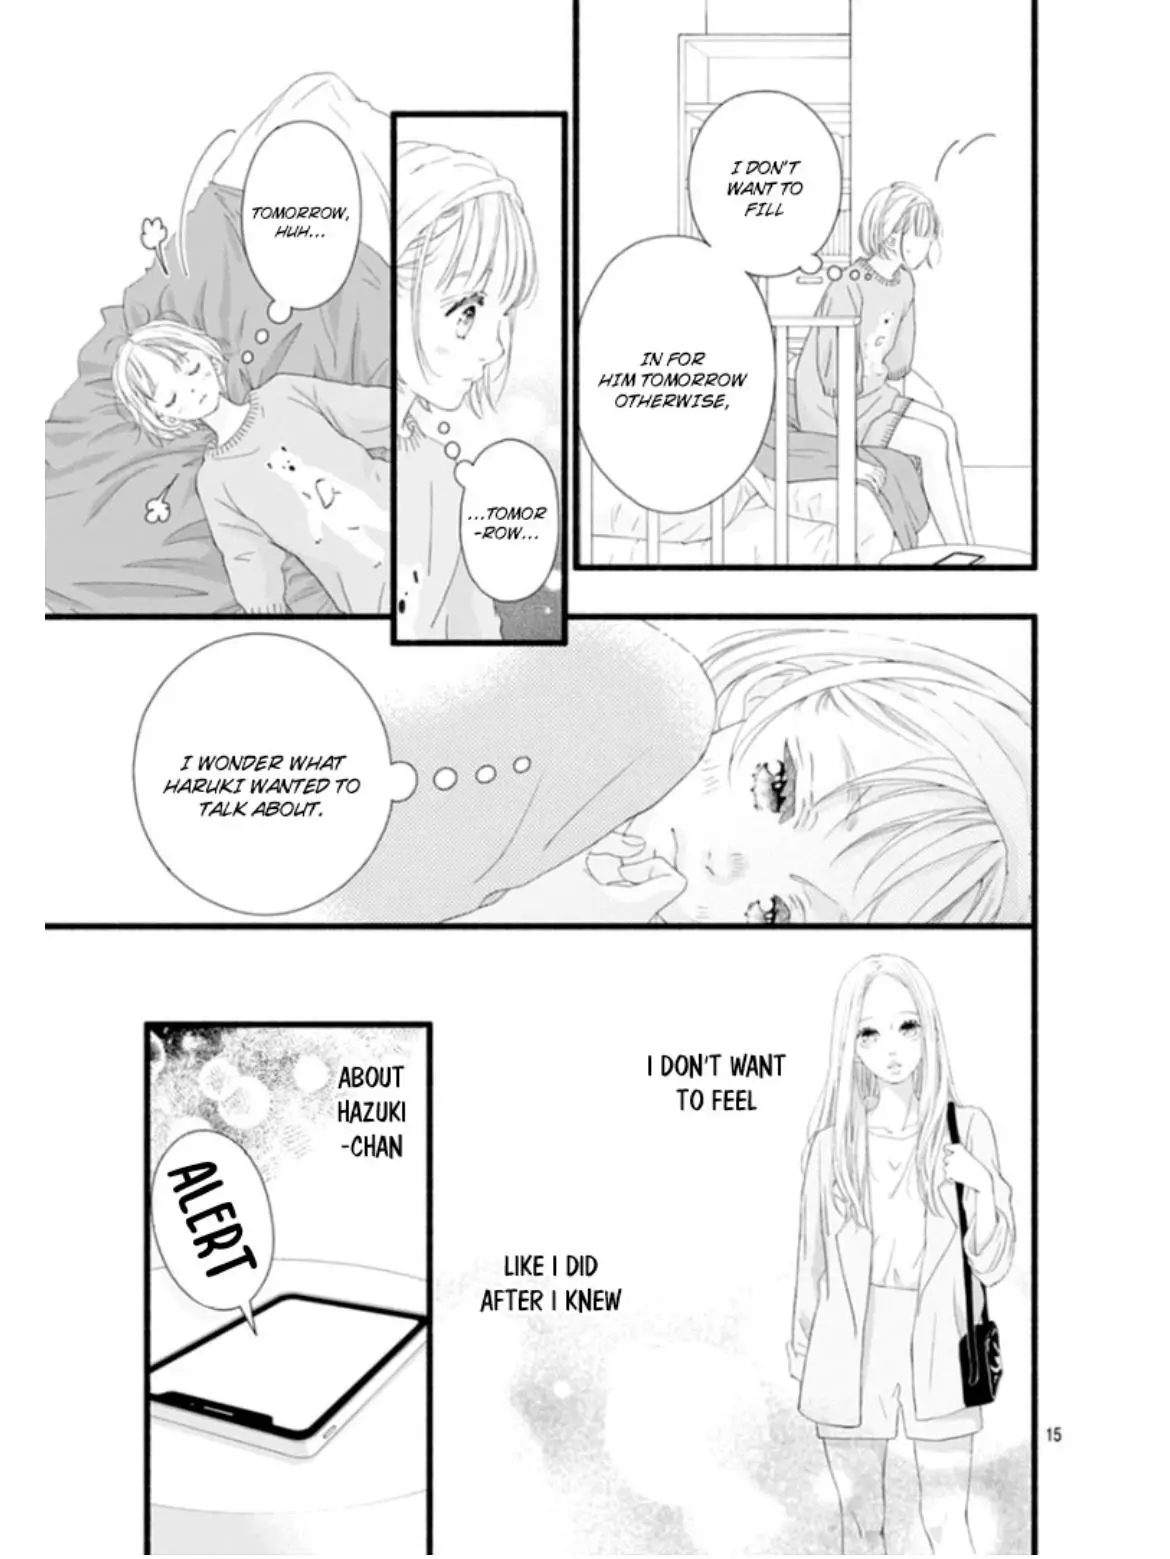 Sakura, Saku - 23 page 19-2ffad7ca